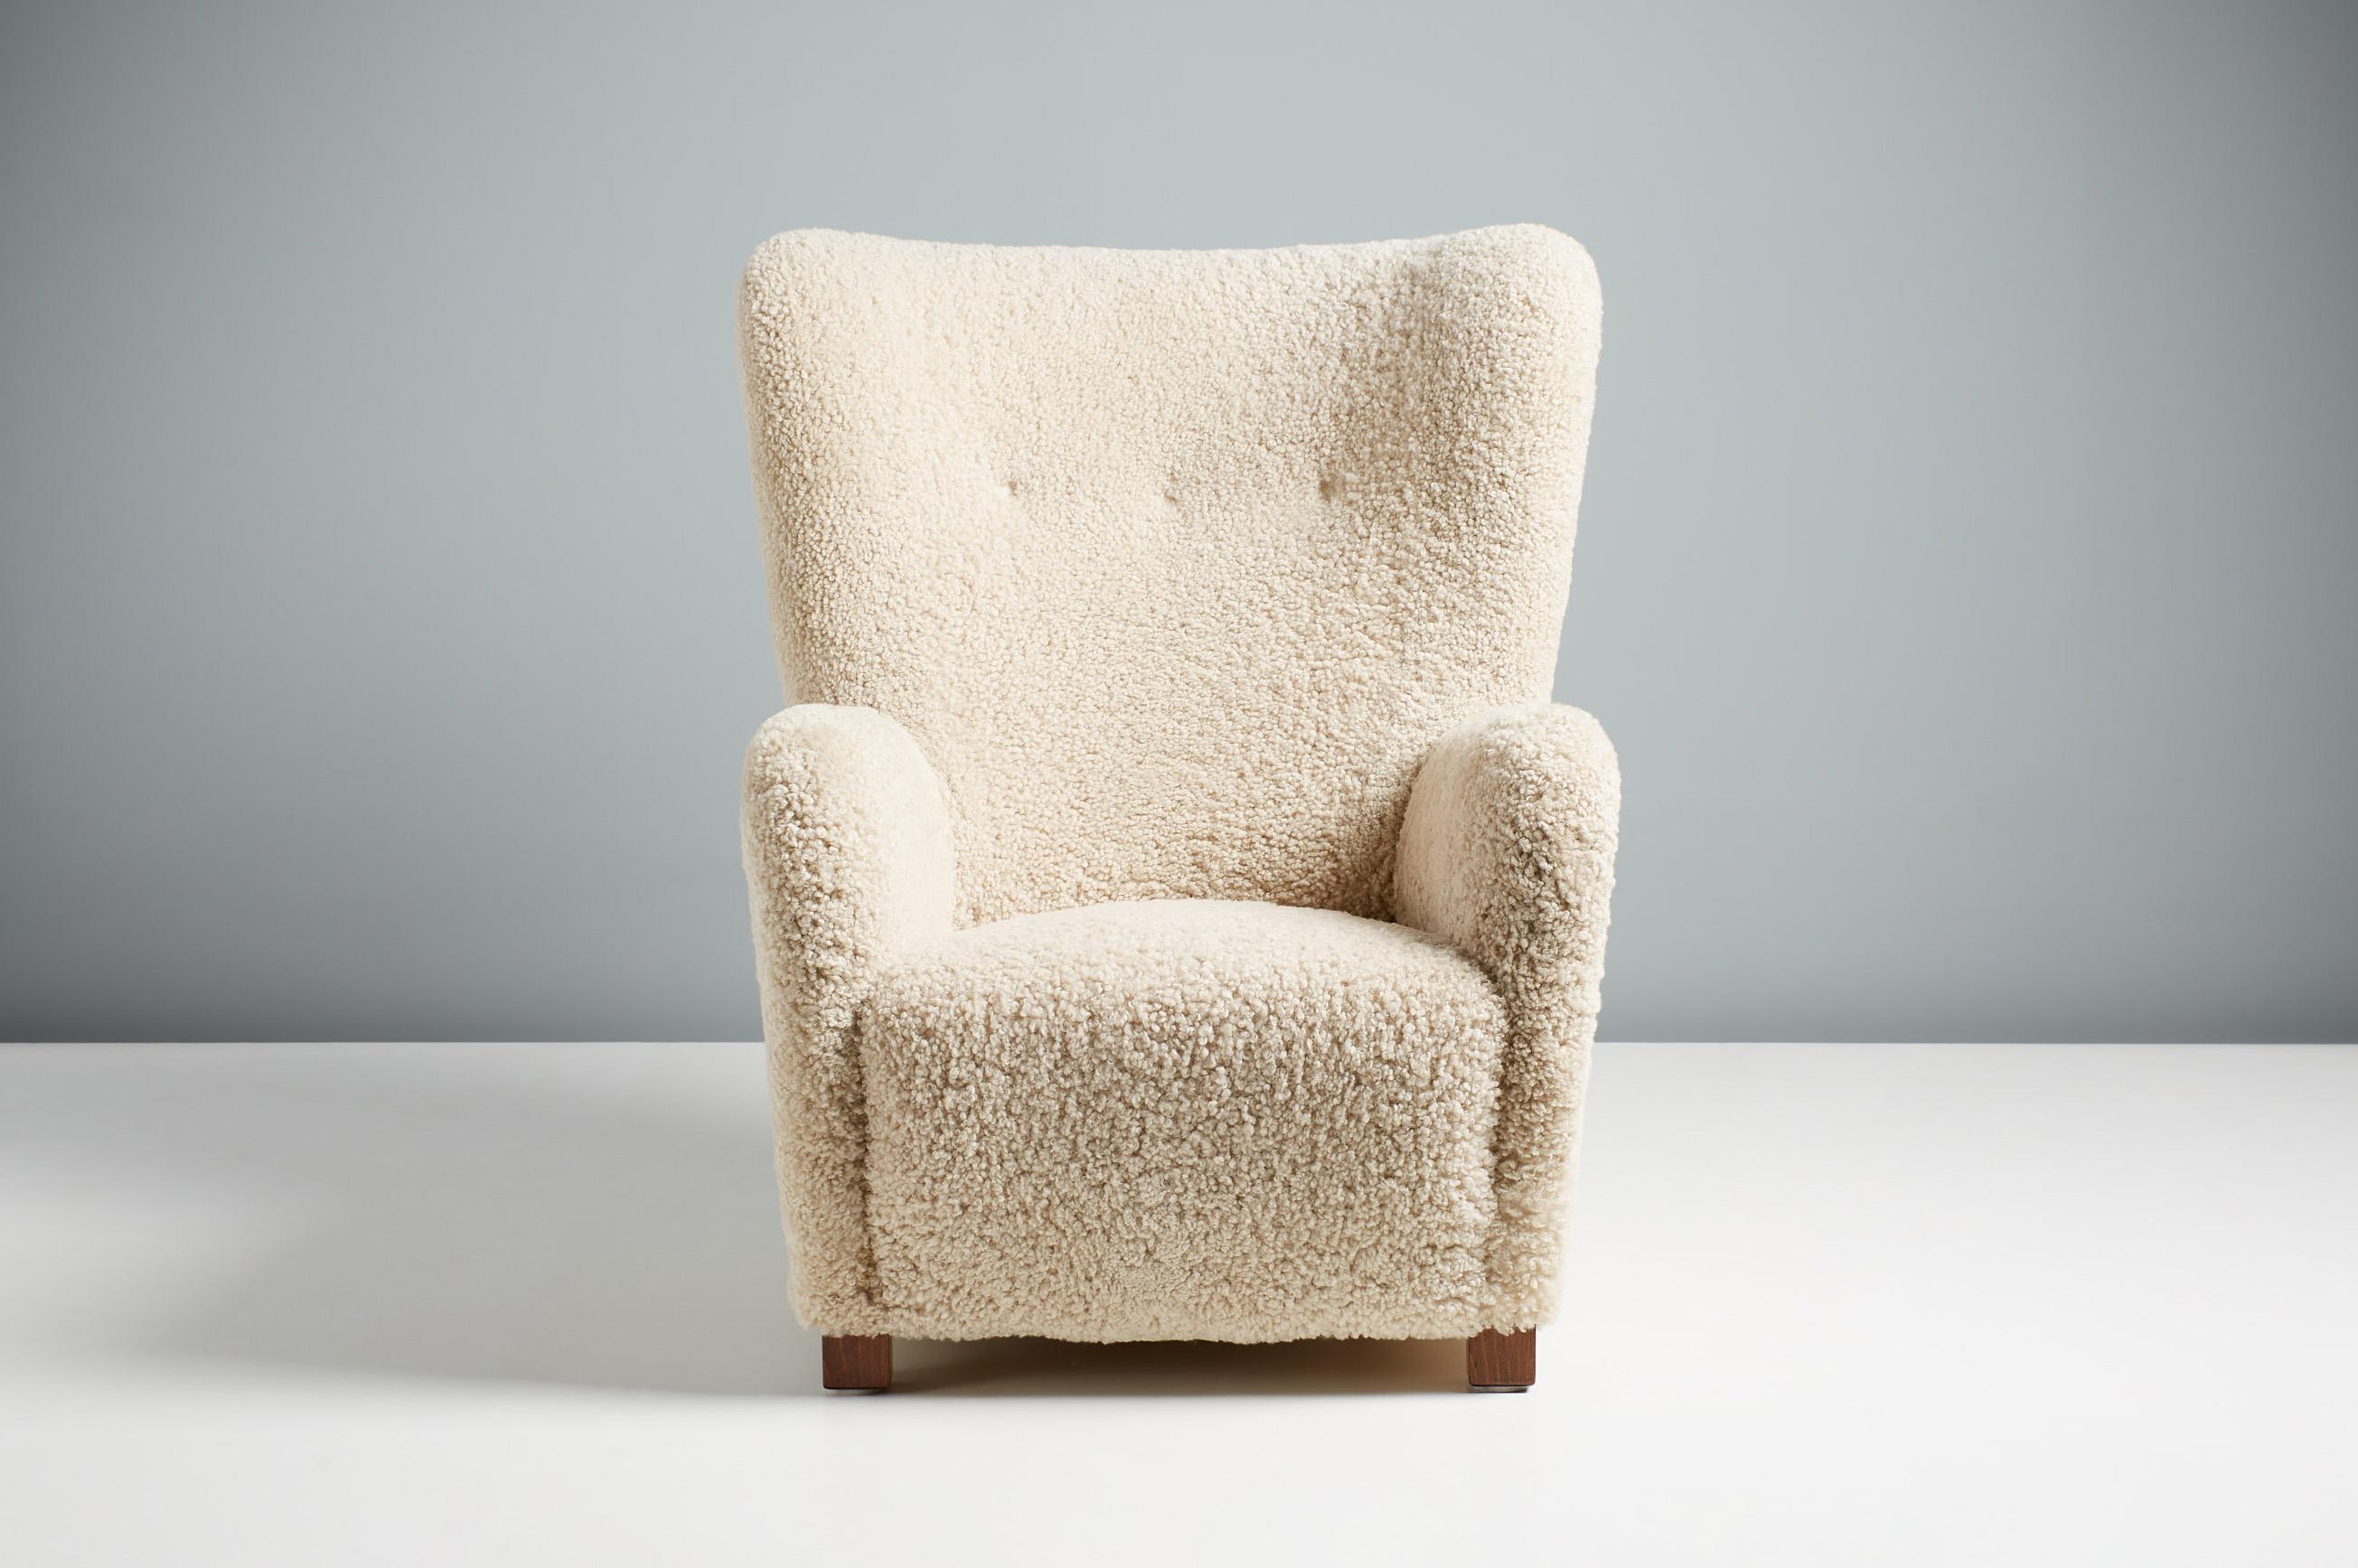 Fauteuil en peau de mouton d'ébéniste danois, vers les années 1940.

Cette grande chaise longue a été fabriquée par un ébéniste danois dans les années 1940 et est typique des chaises longues danoises de l'époque. Il est doté d'un dossier à